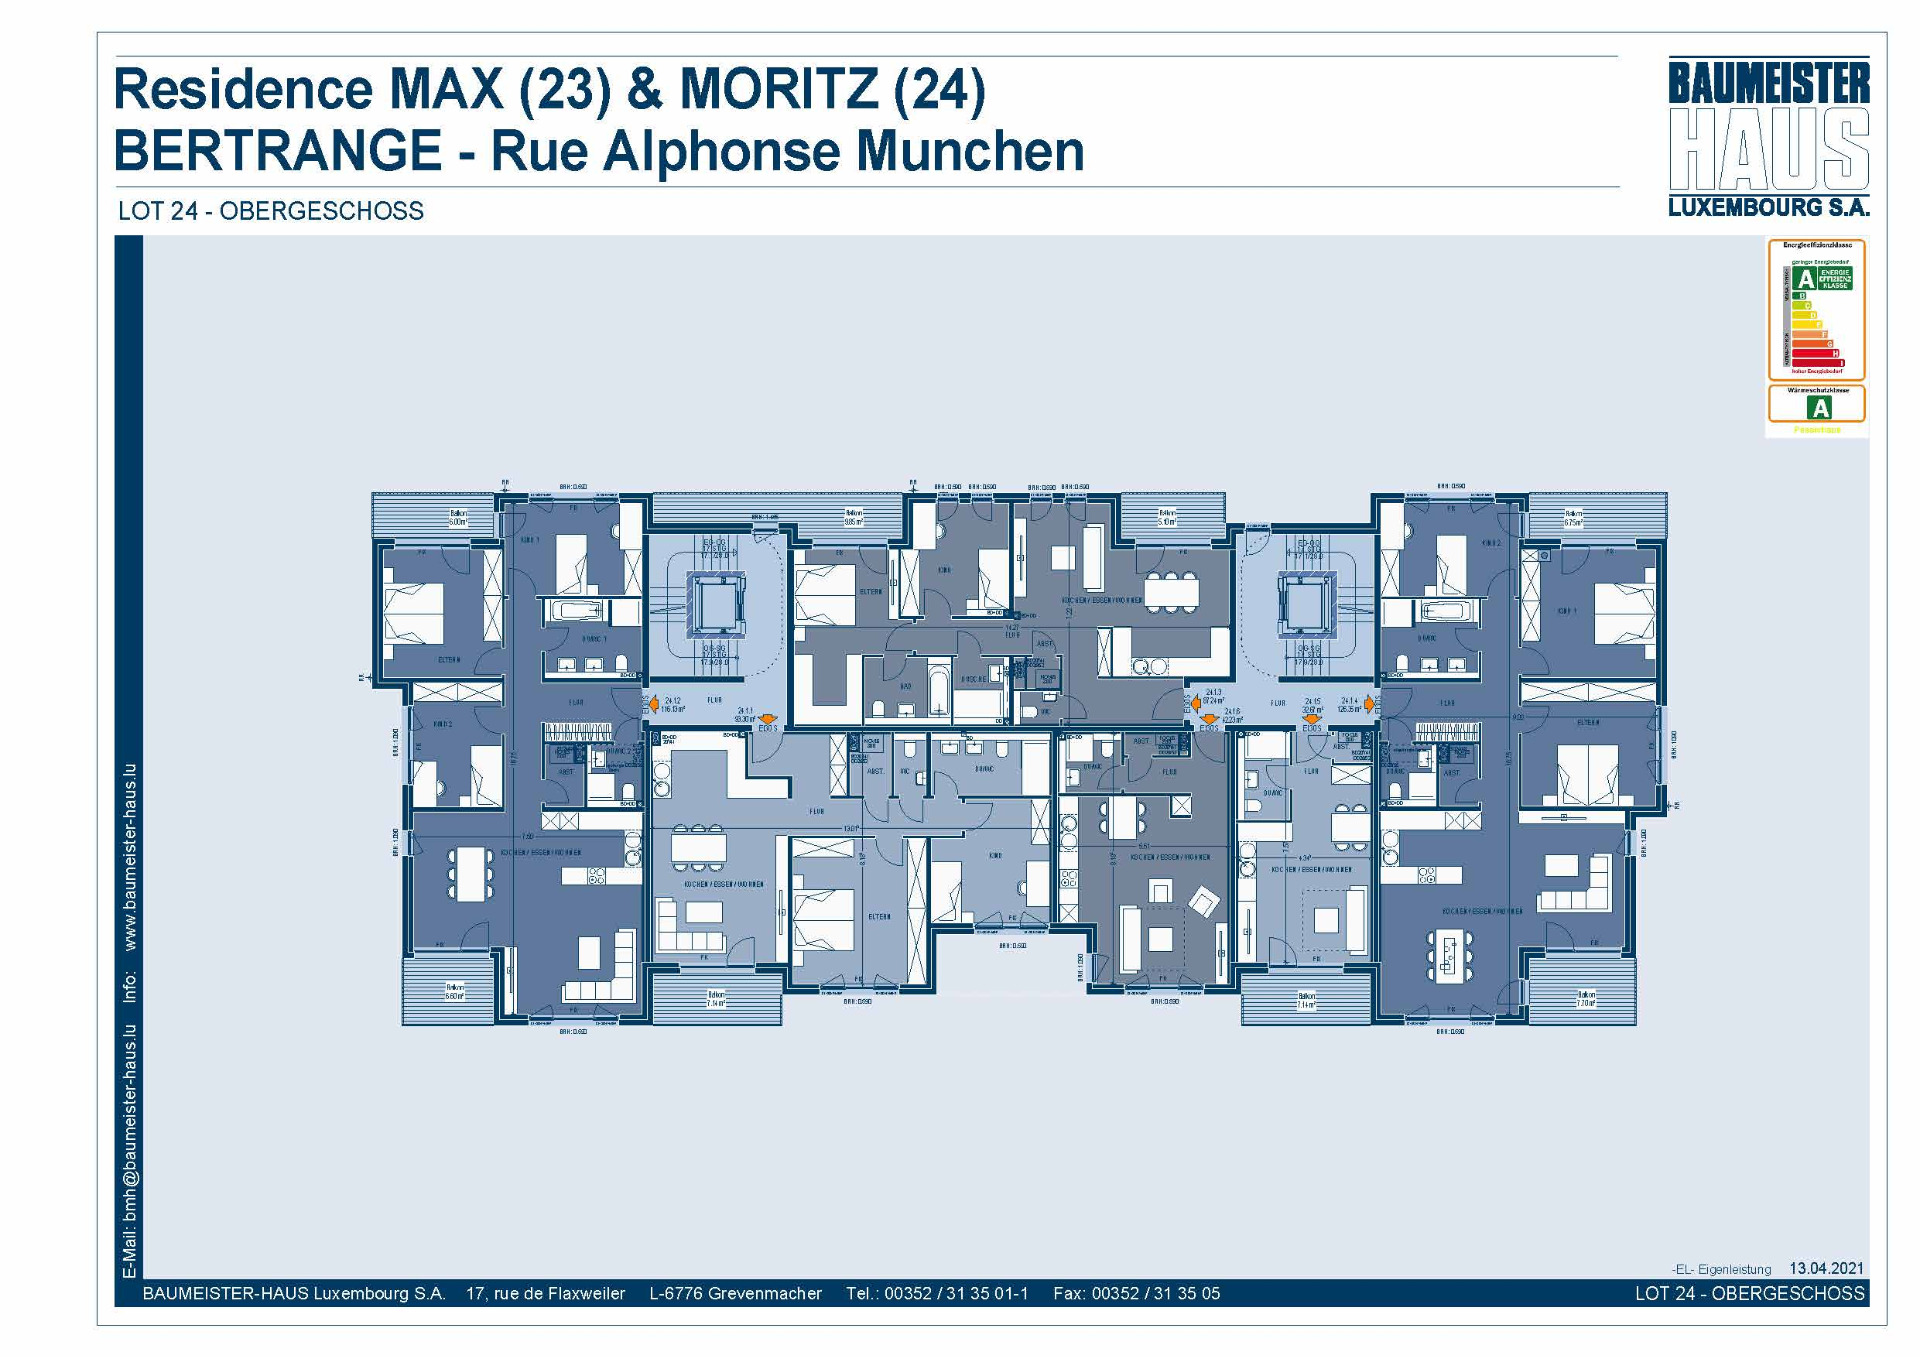 Residenz Moritz 24.1.1